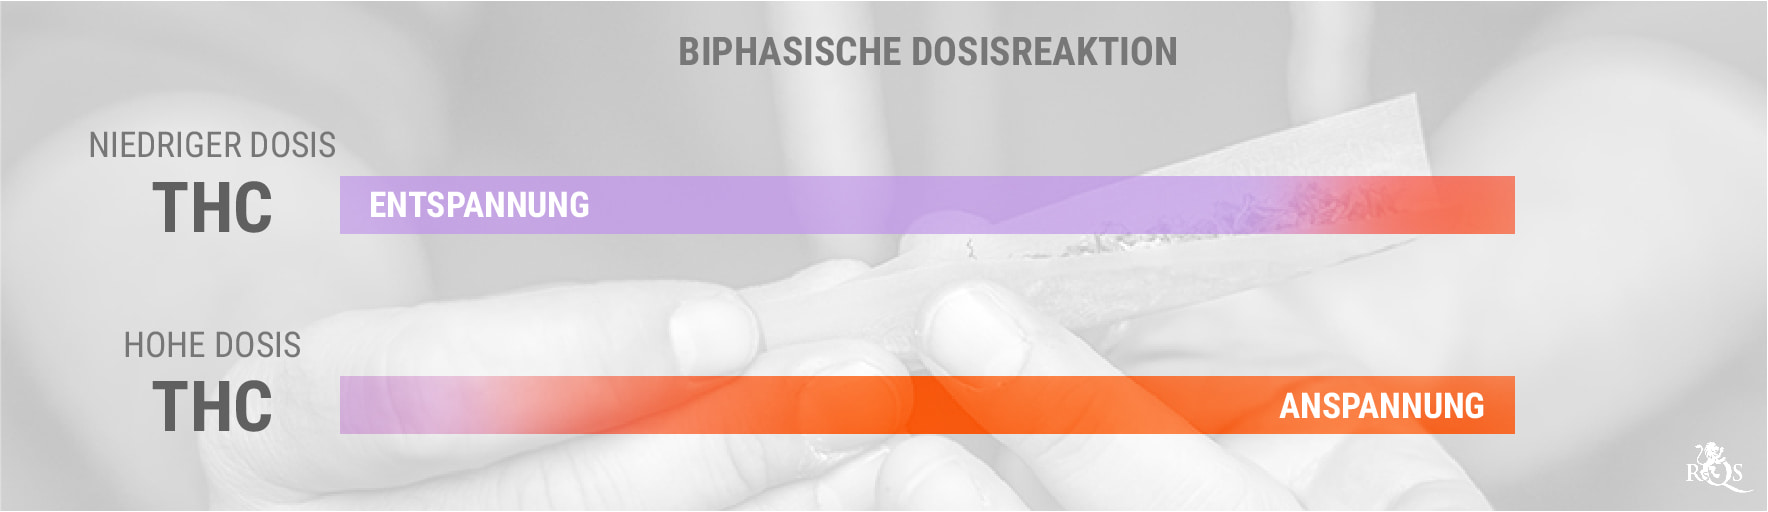 THC und die biphasische Dosisreaktion